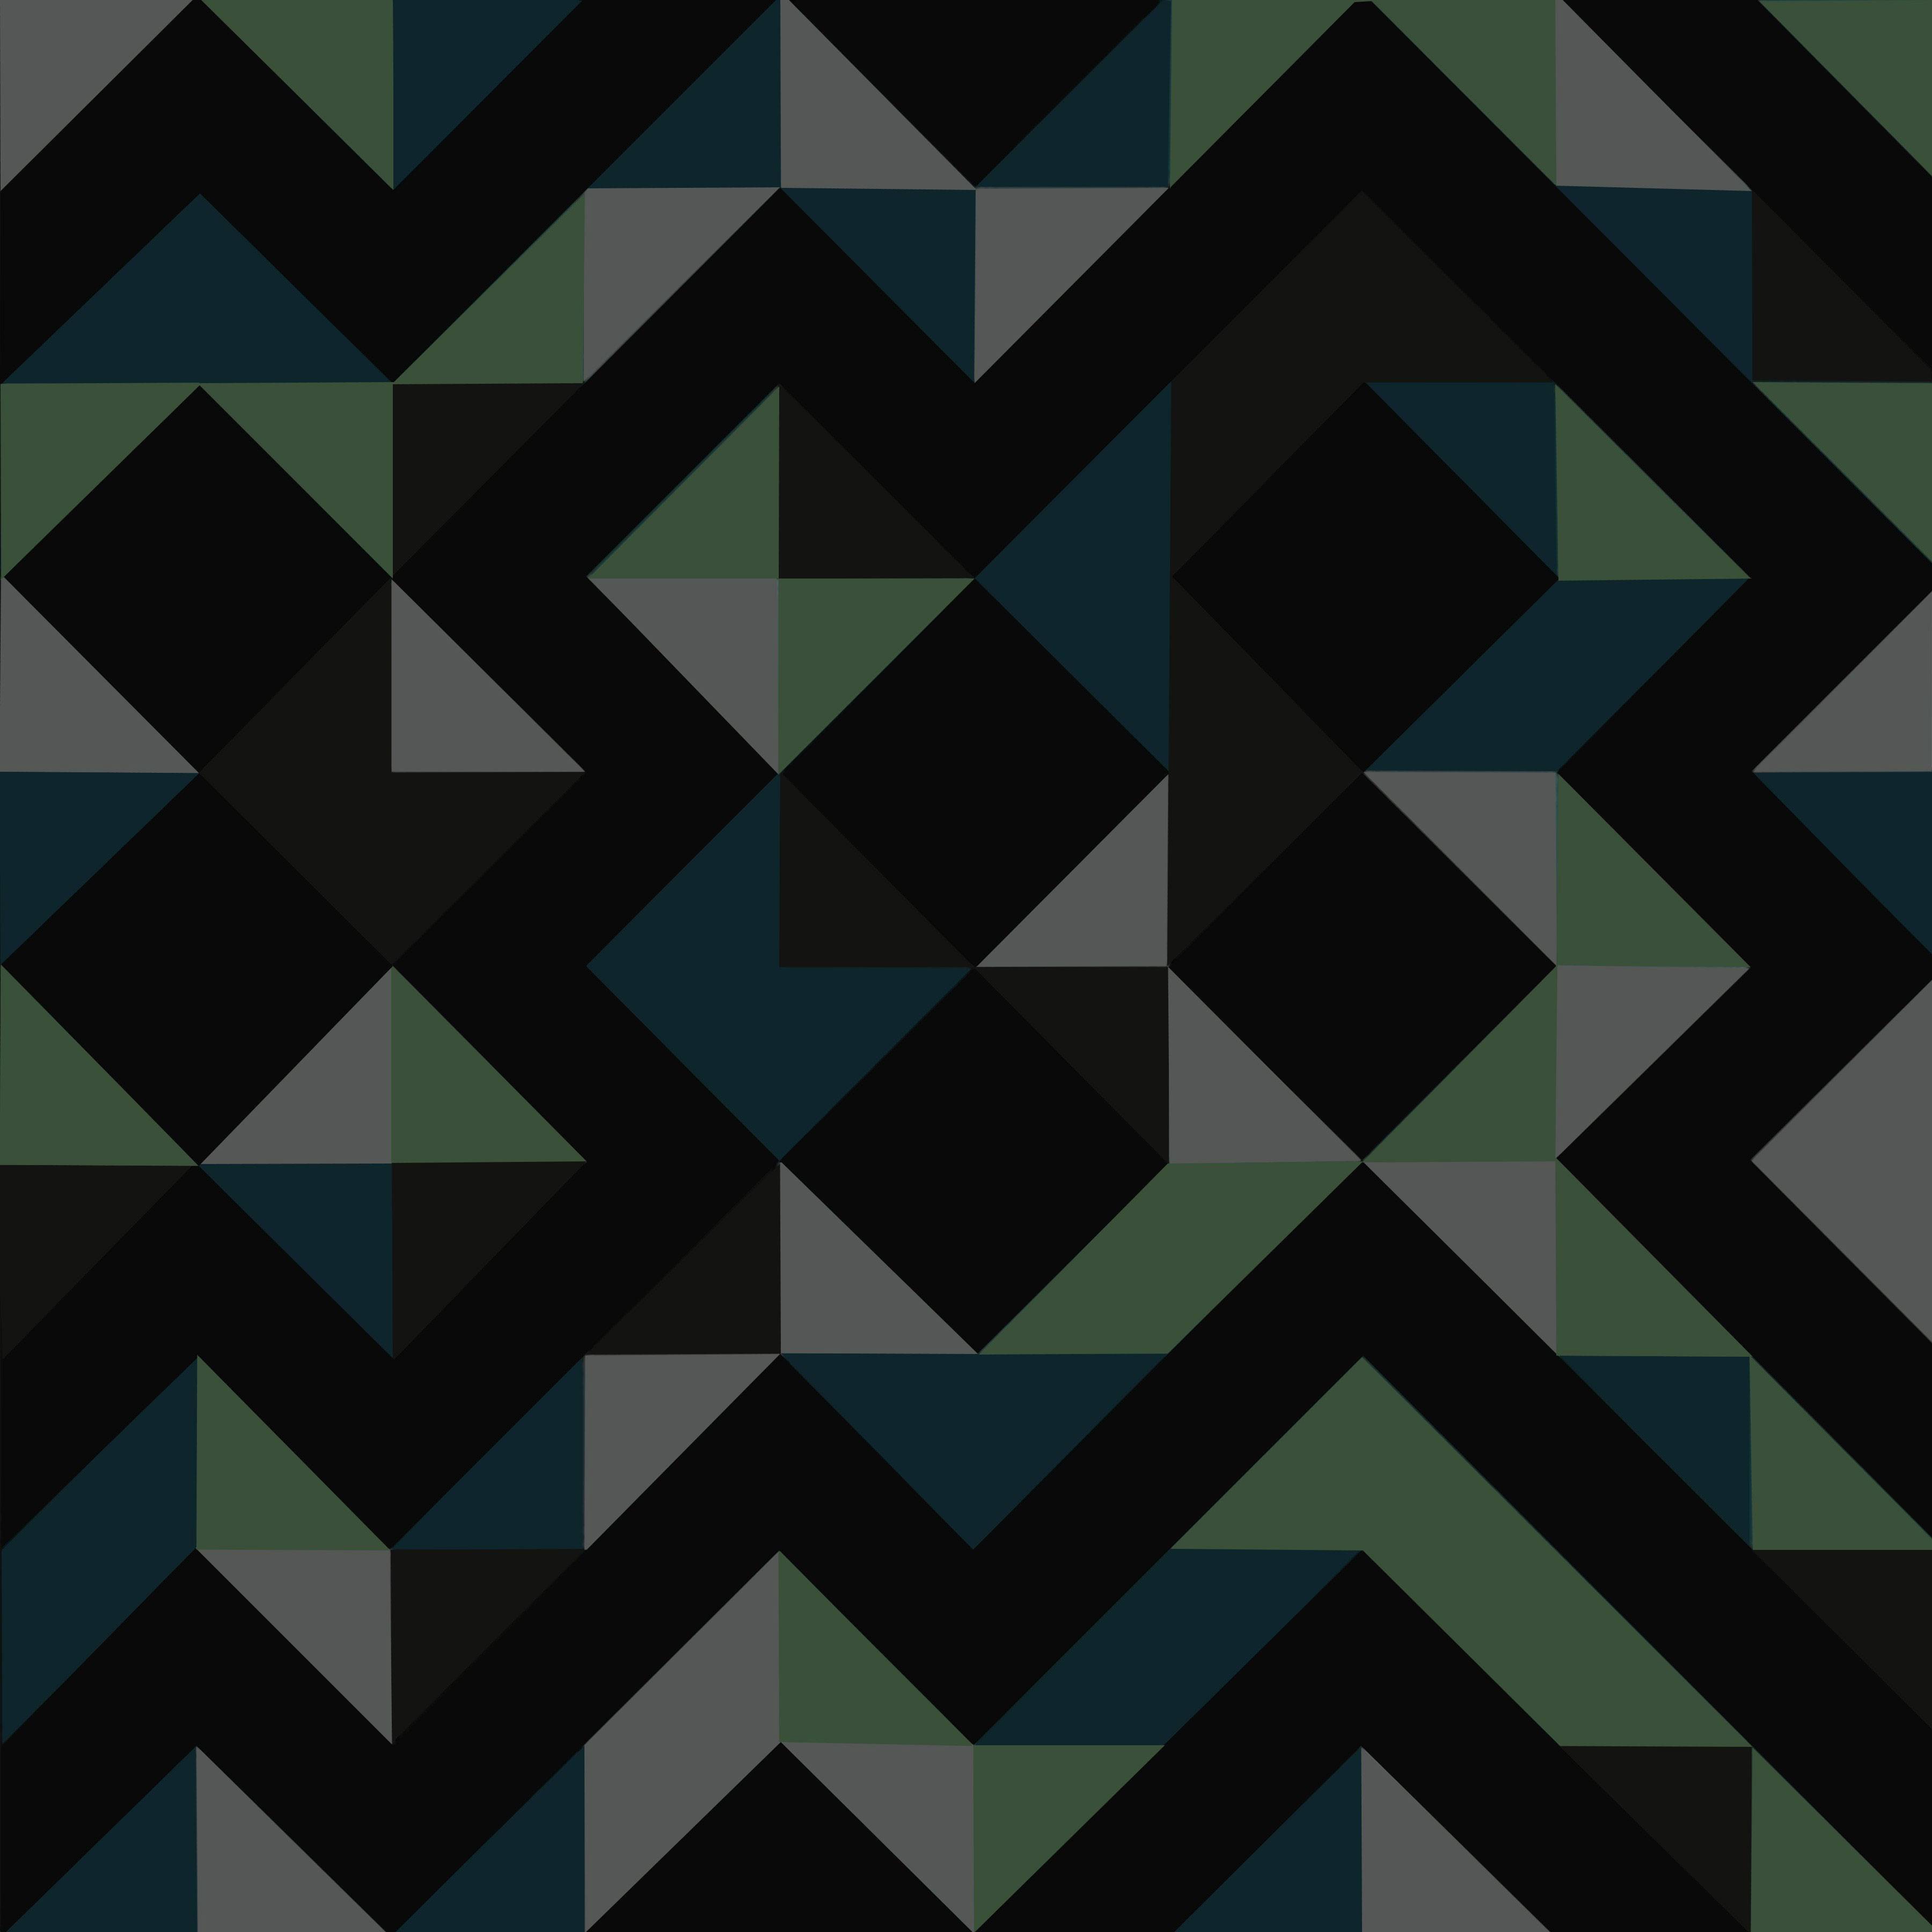 Geometric patterns + Minimalist